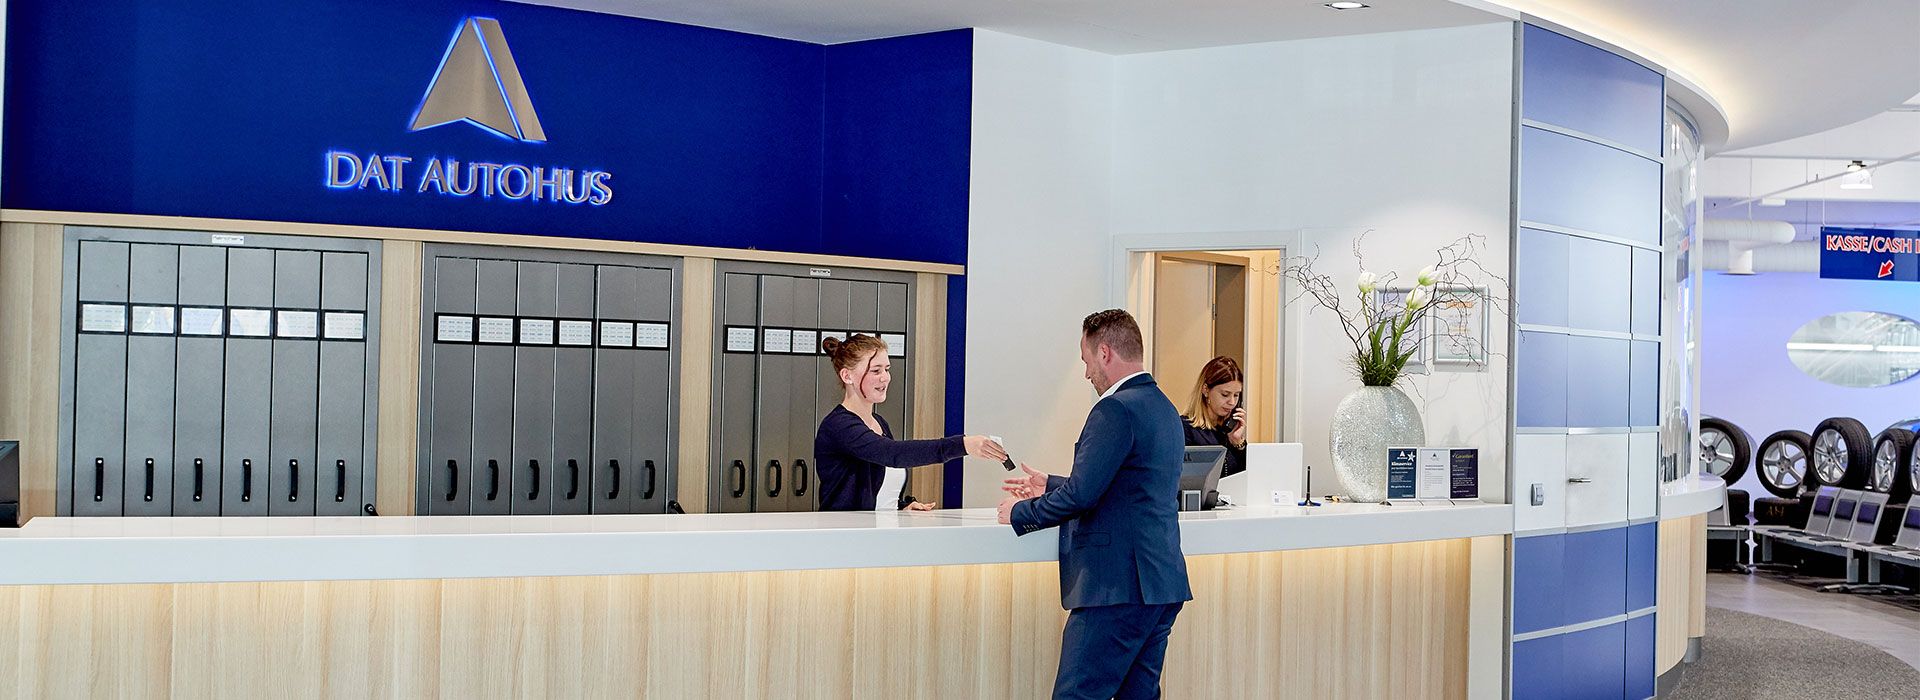 Clientul corporativ își primește cheile în clădirea DAT AUTOHUS